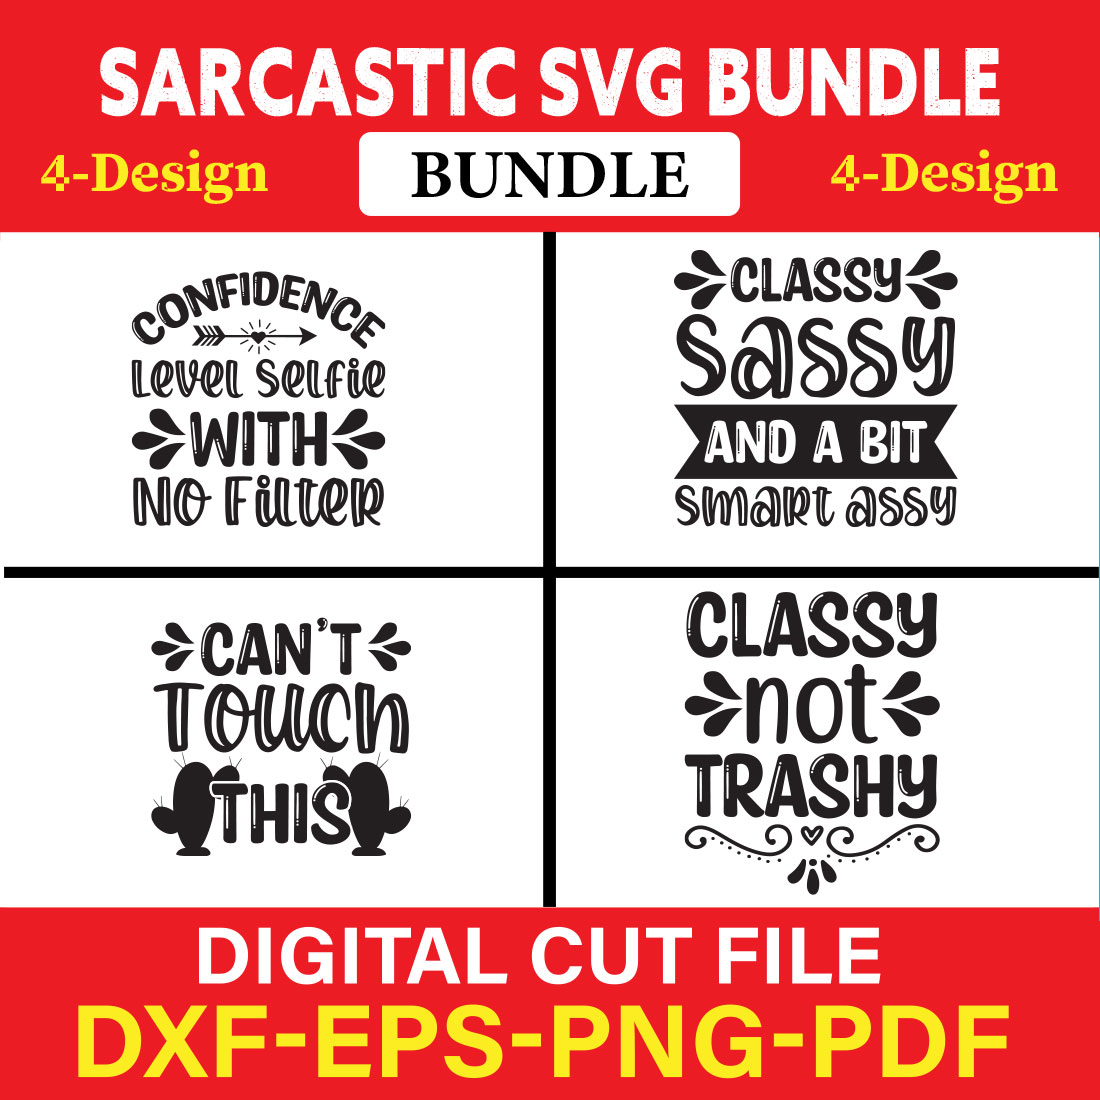 Sarcastic T-shirt Design Bundle Vol-2 cover image.